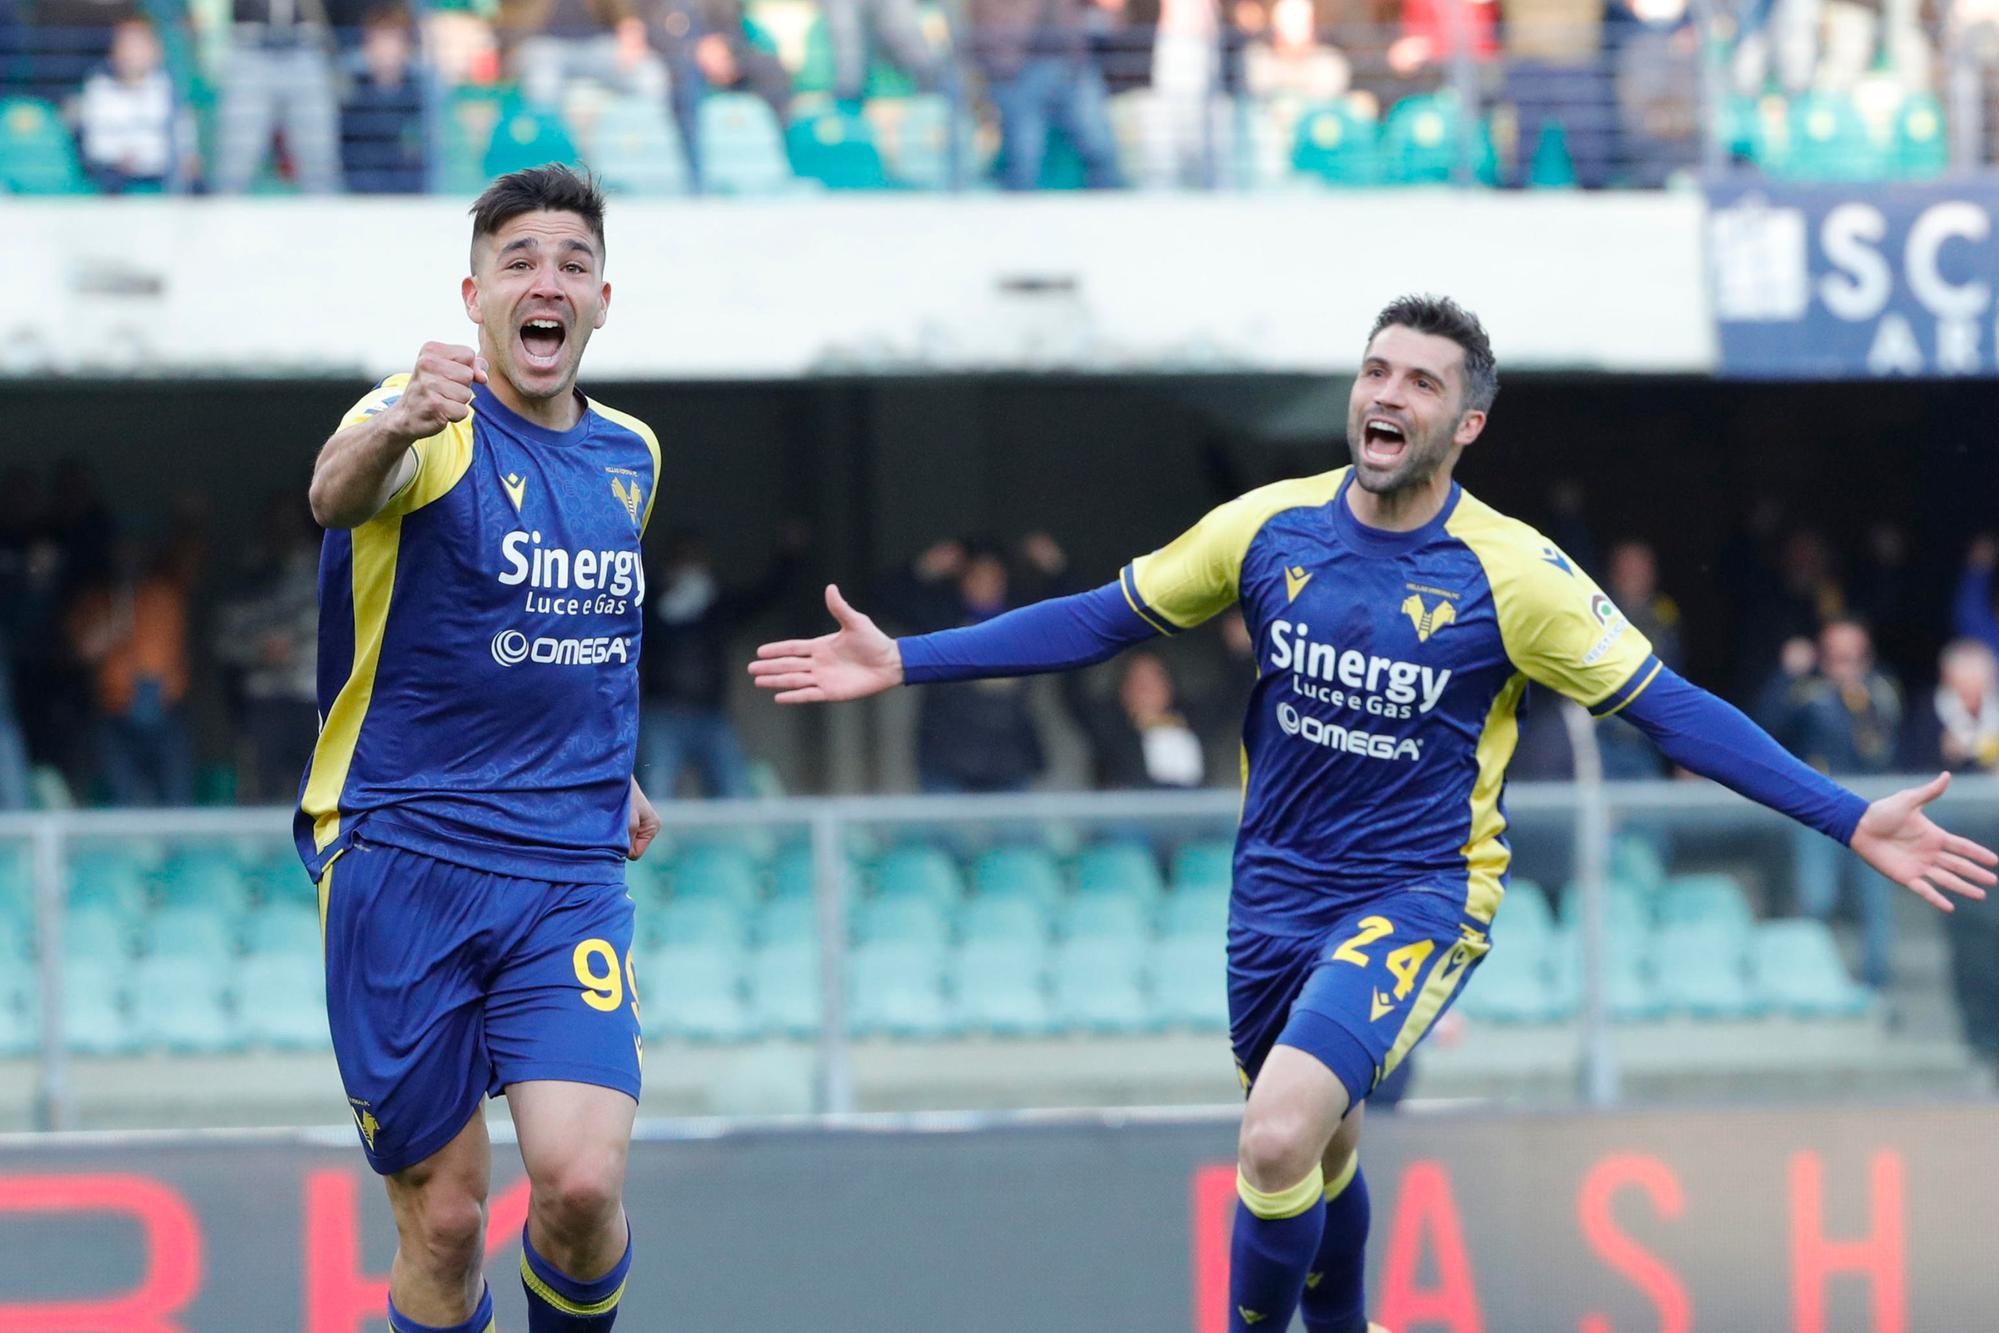 Ufficiale: Giovanni Simeone è un giocatore del Verona